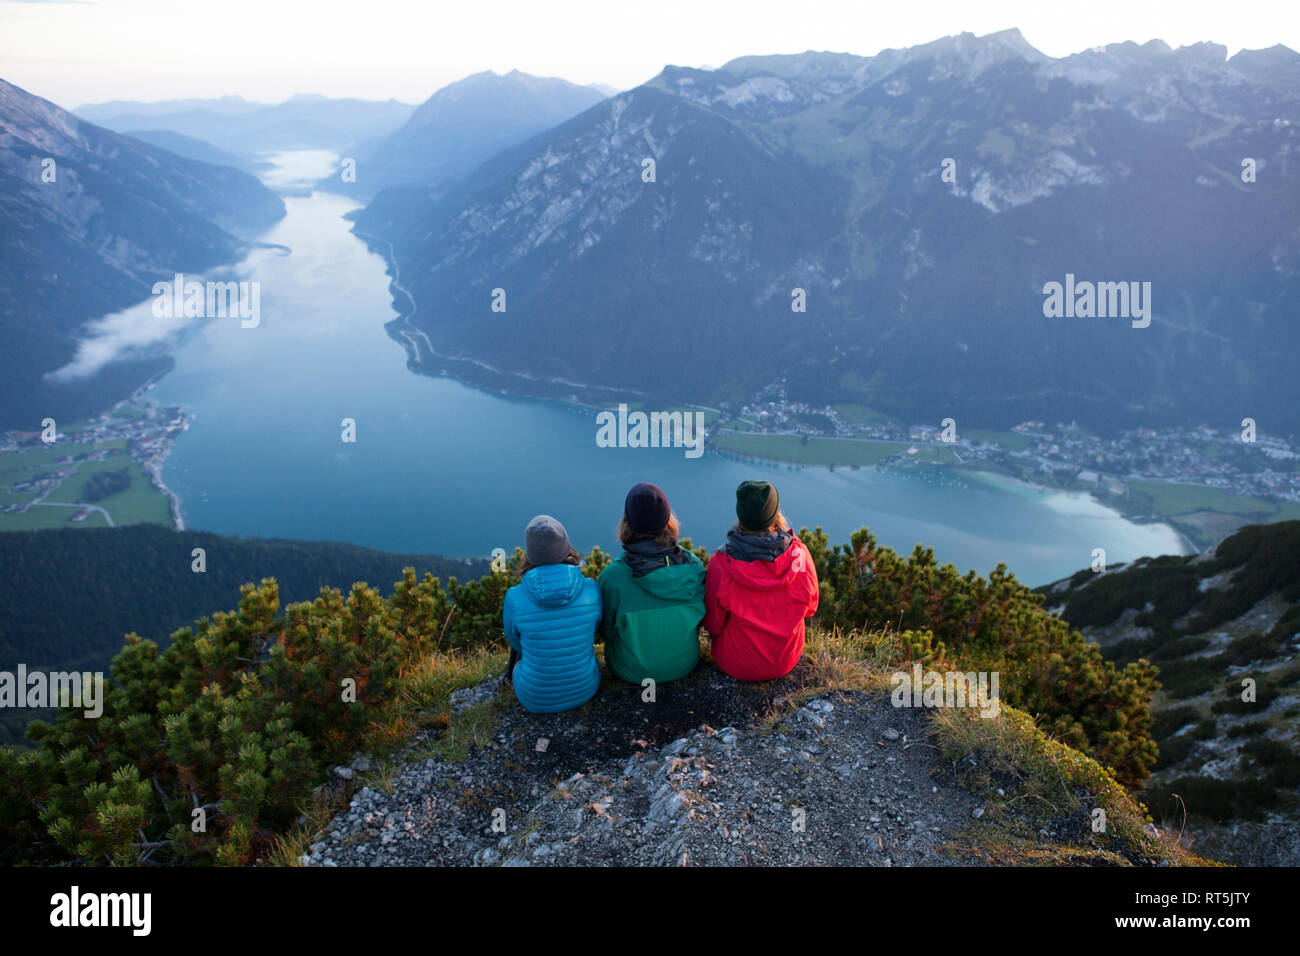 Austria, Tirolo, tre escursionisti godendo della vista sul lago Achensee Foto Stock